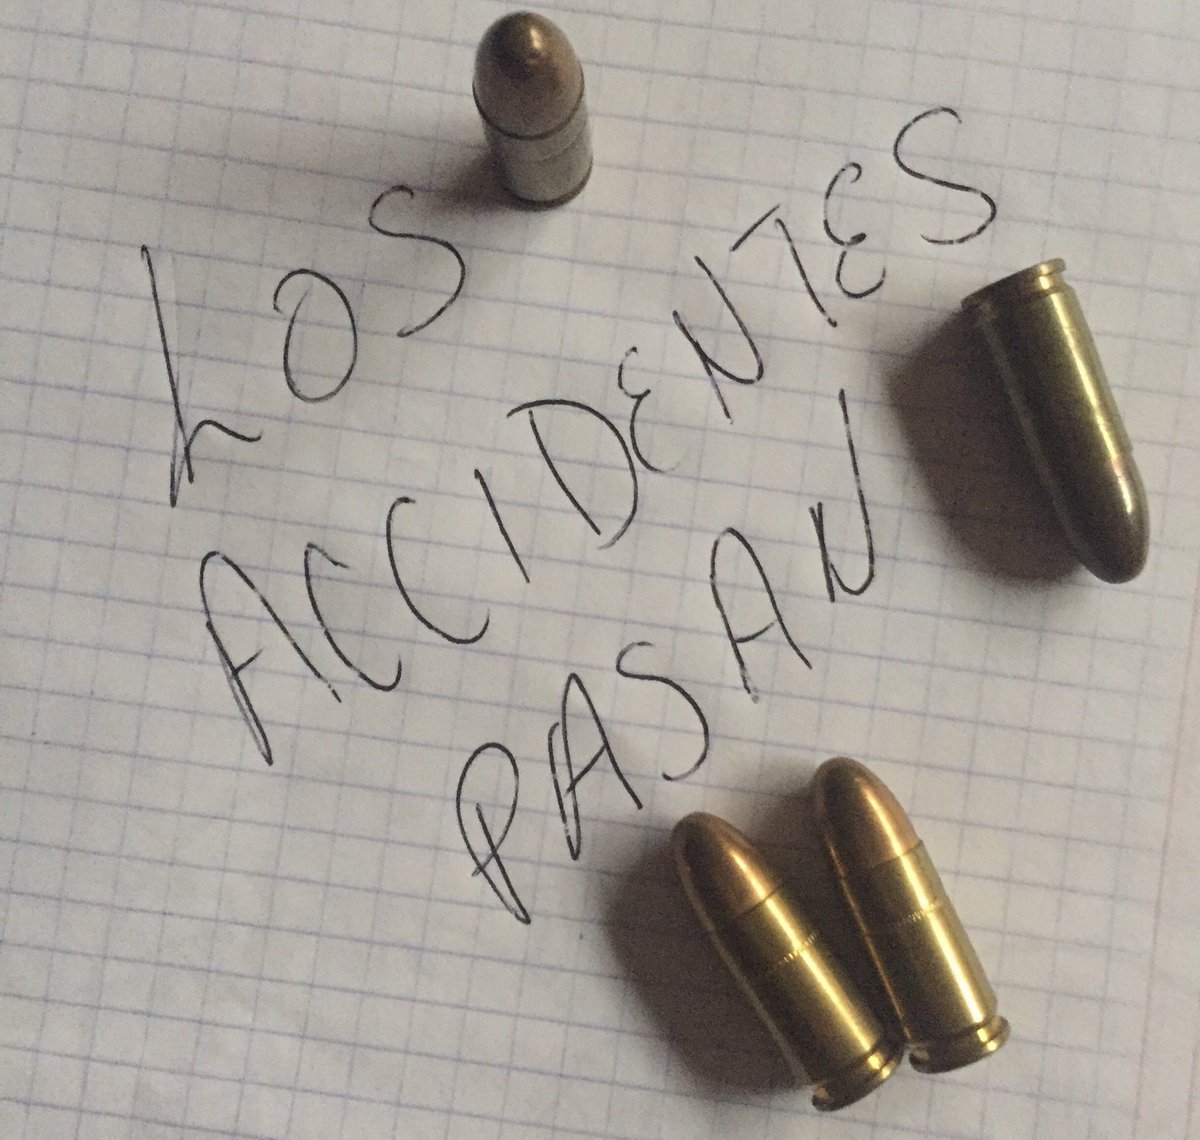 Amenazan de muerte a Puigdemont y a su familia vía Twitter